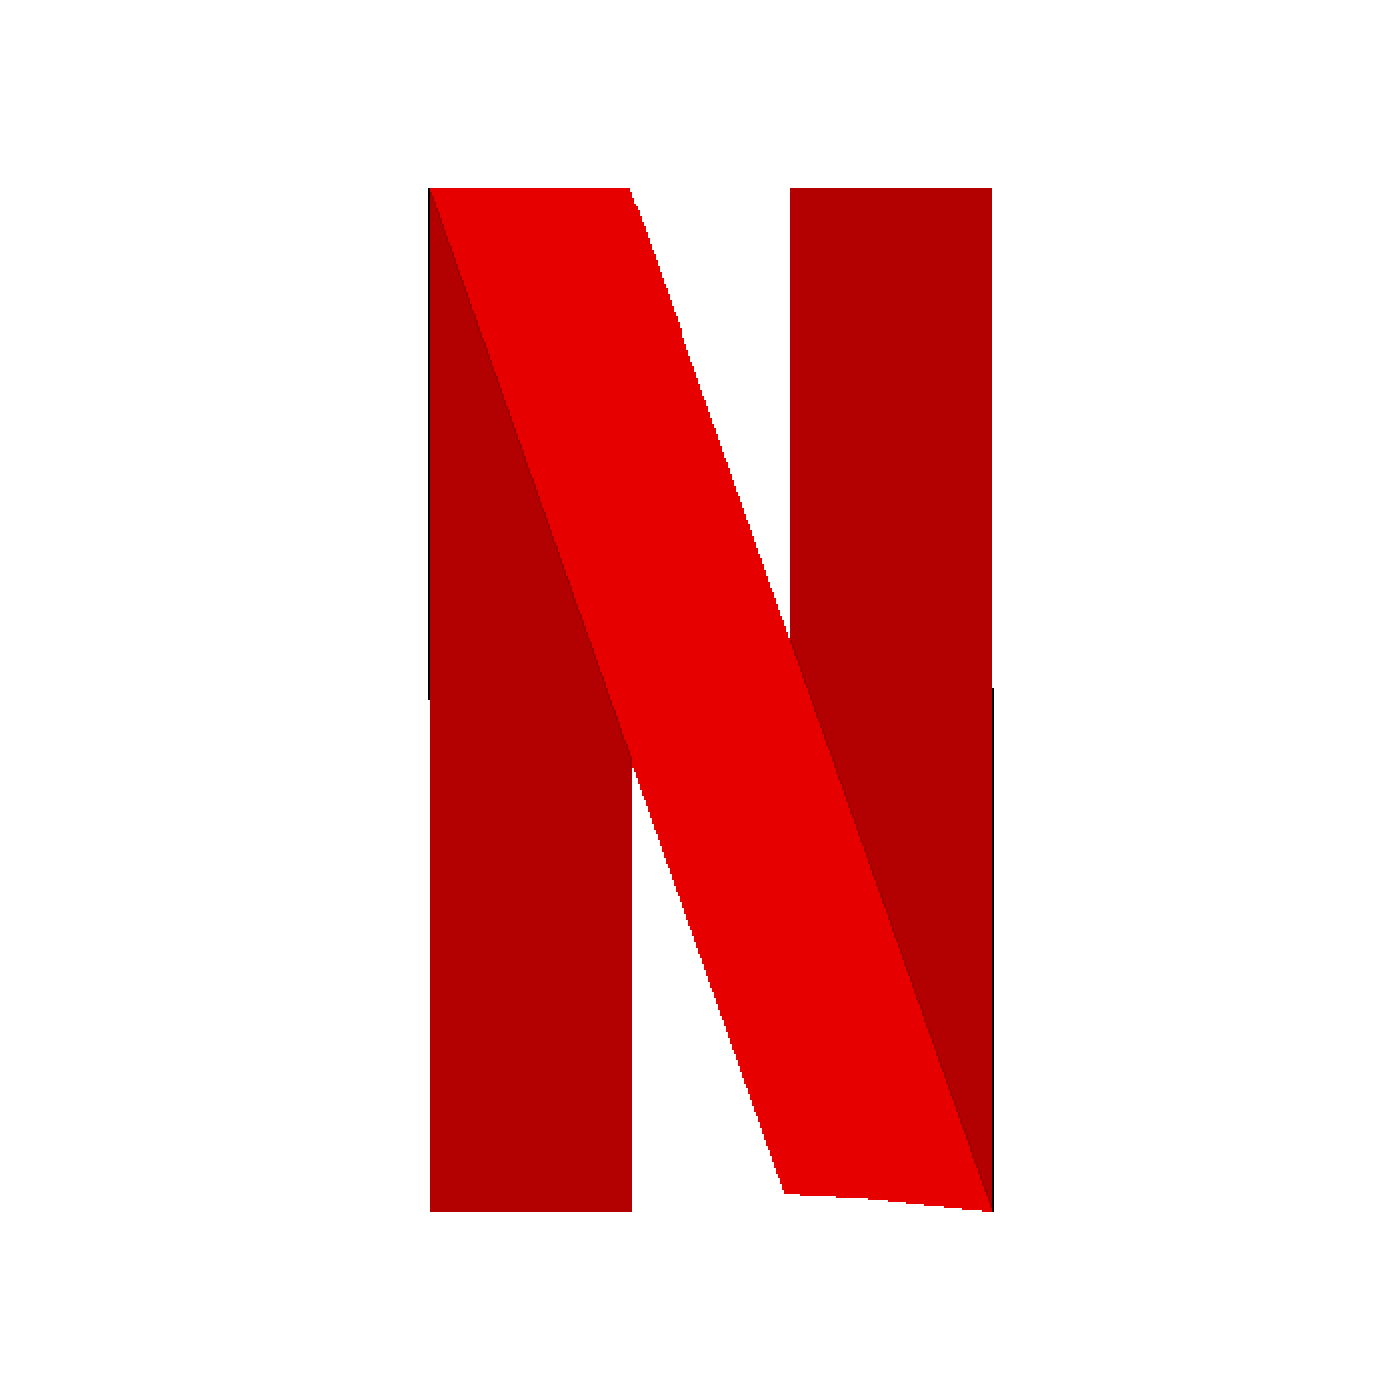 Netflicks Logo - Pixilart - Netflix logo by Flash2017